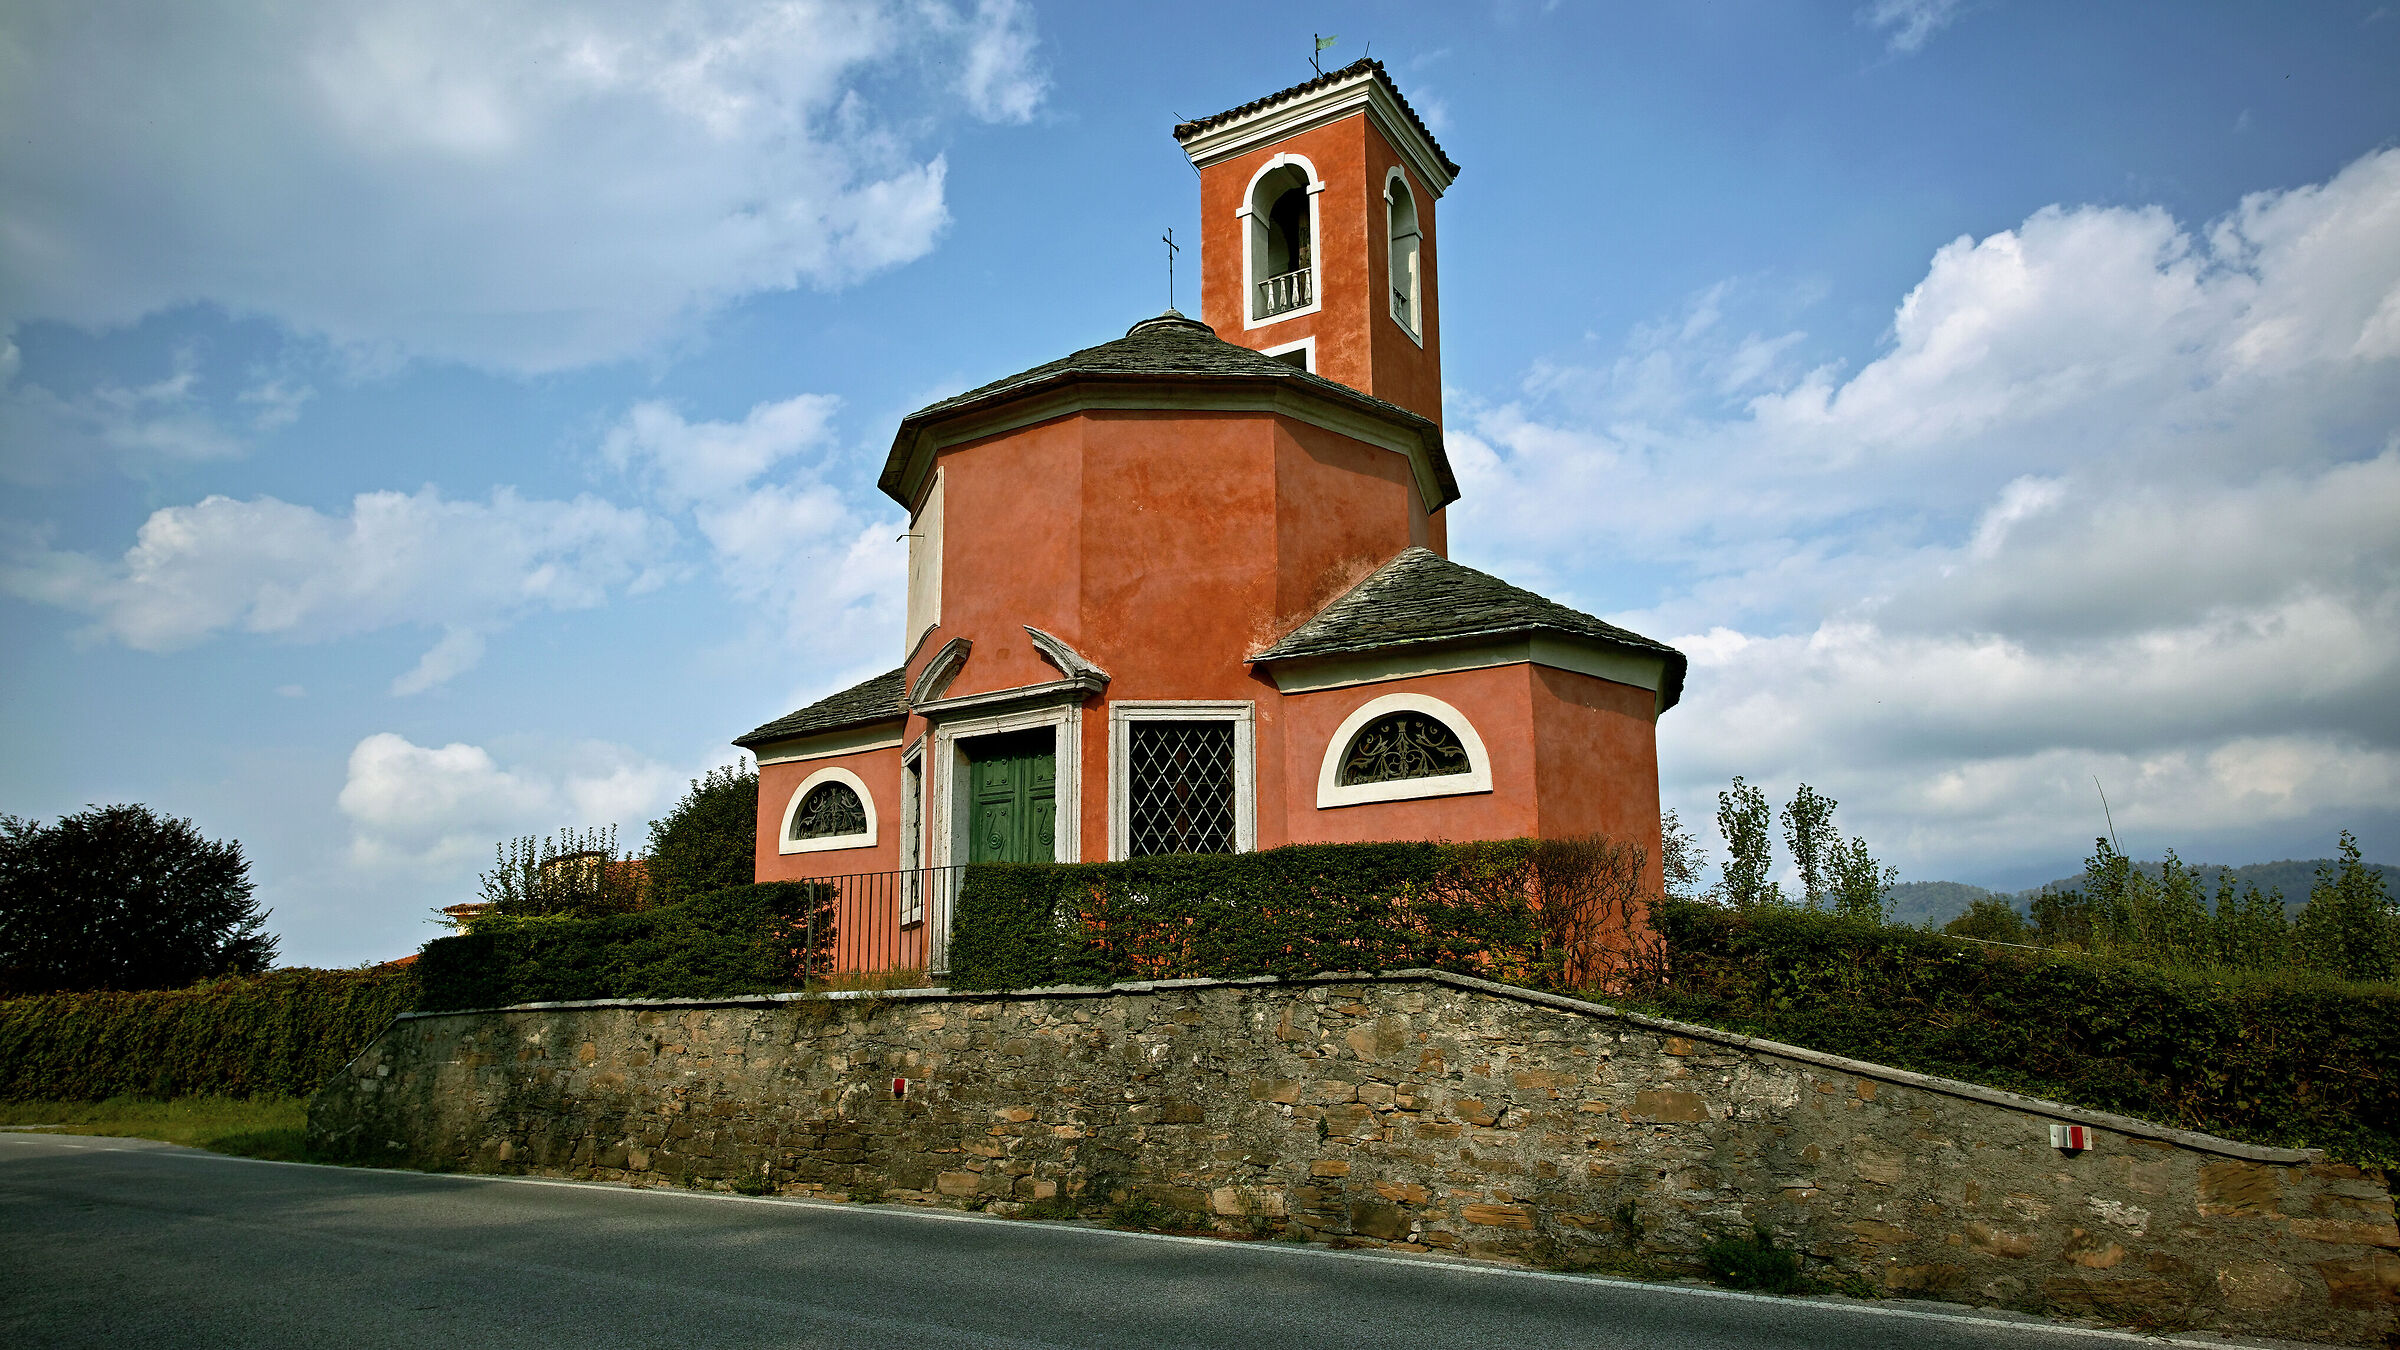 Chiesetta San Pellegrino (Villa Buzzati)...